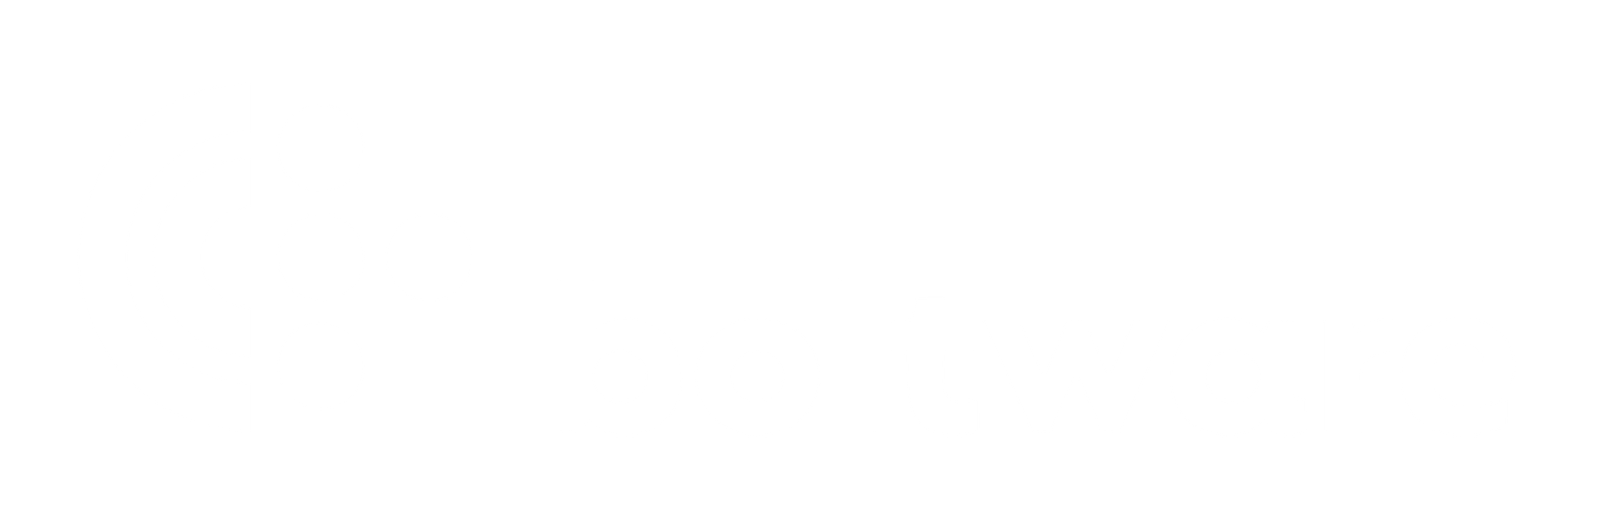 Boltware